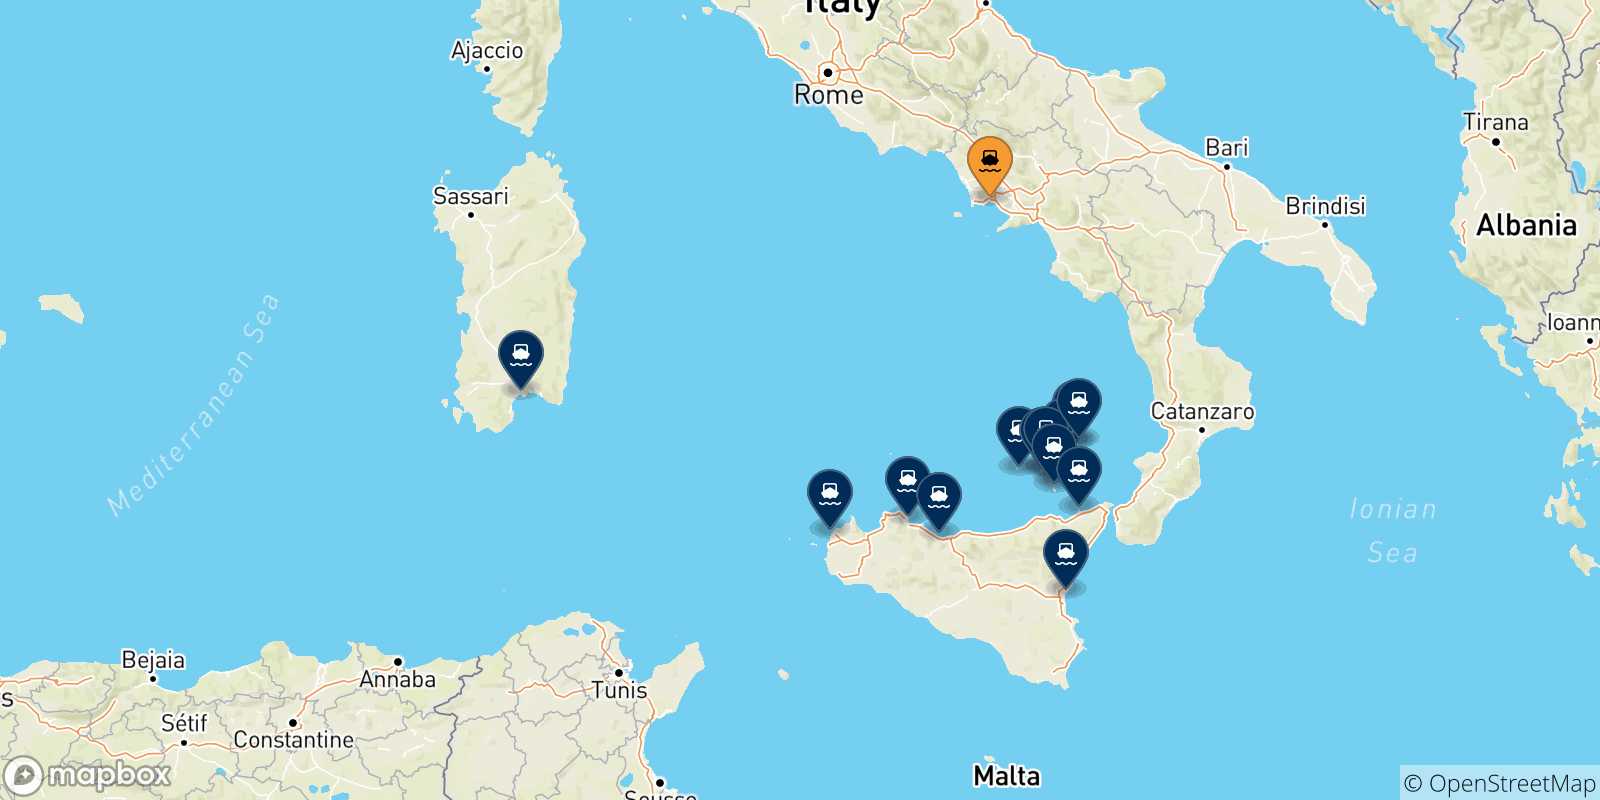 Mappa delle possibili rotte tra Napoli e l'Italia